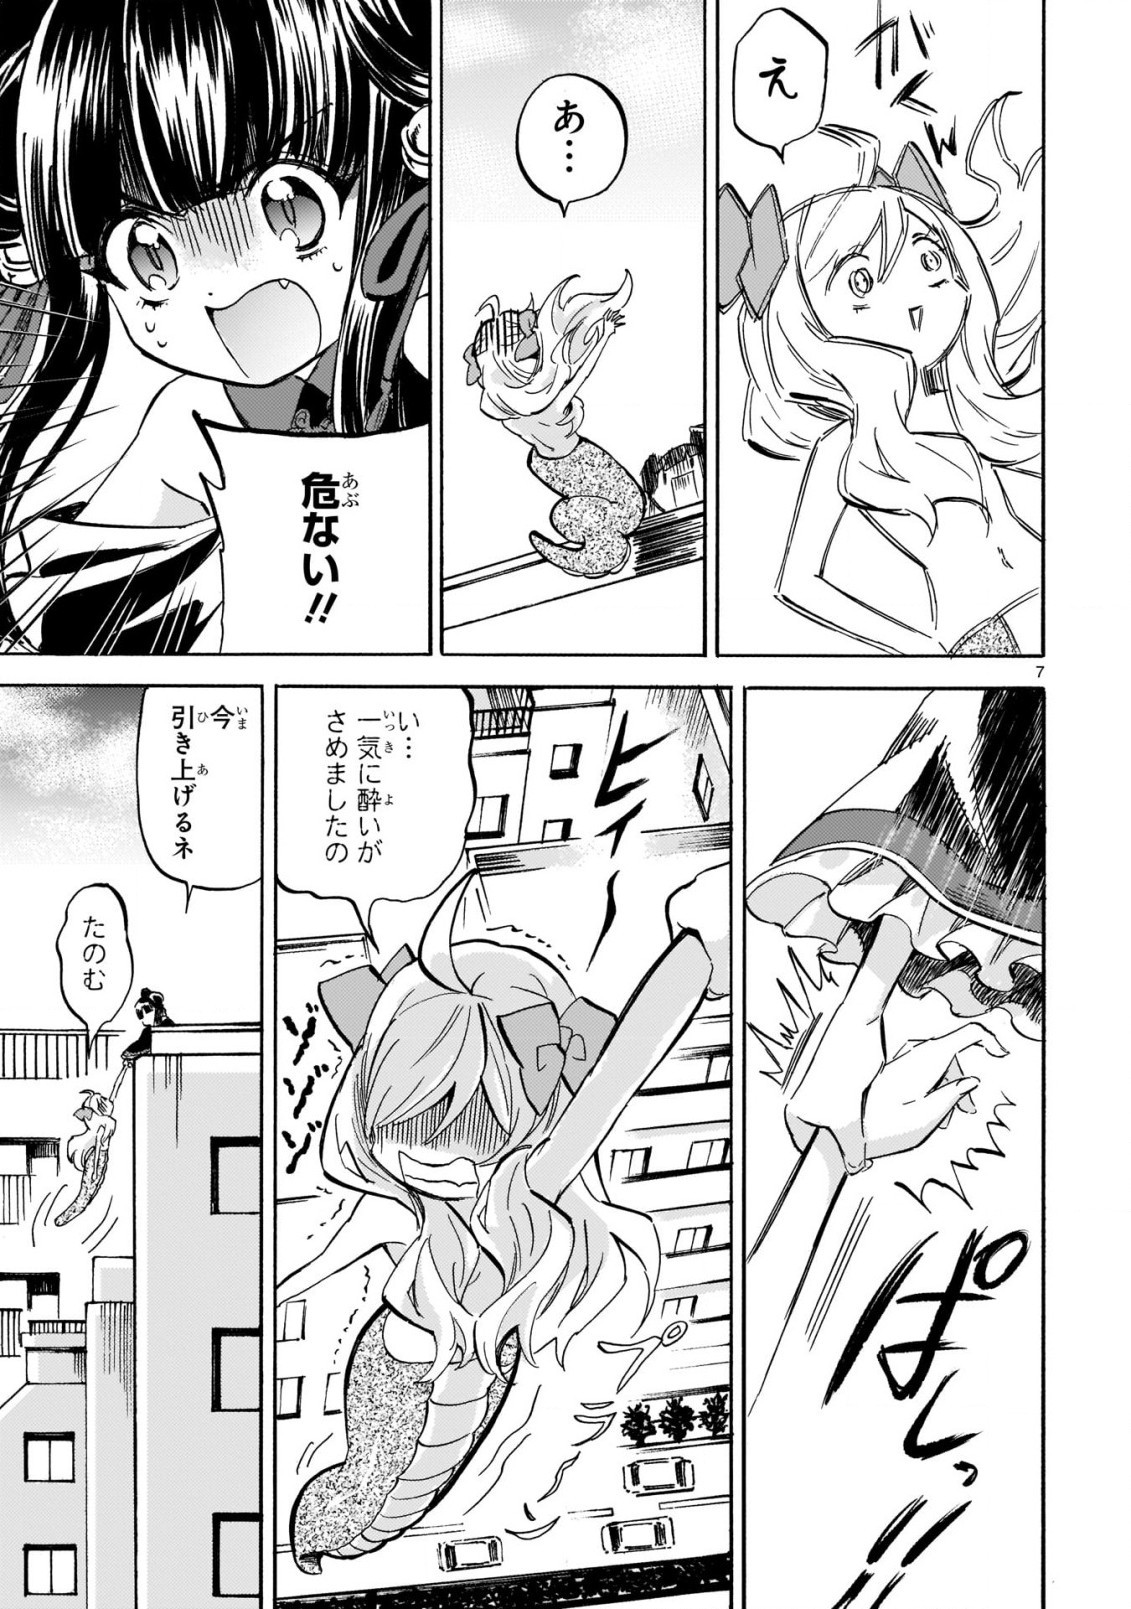 Jashin-chan Dropkick - Chapter 203 - Page 7